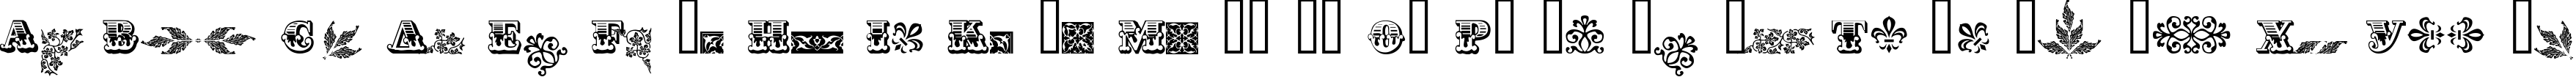 Пример написания английского алфавита шрифтом AsylbekM05.kz